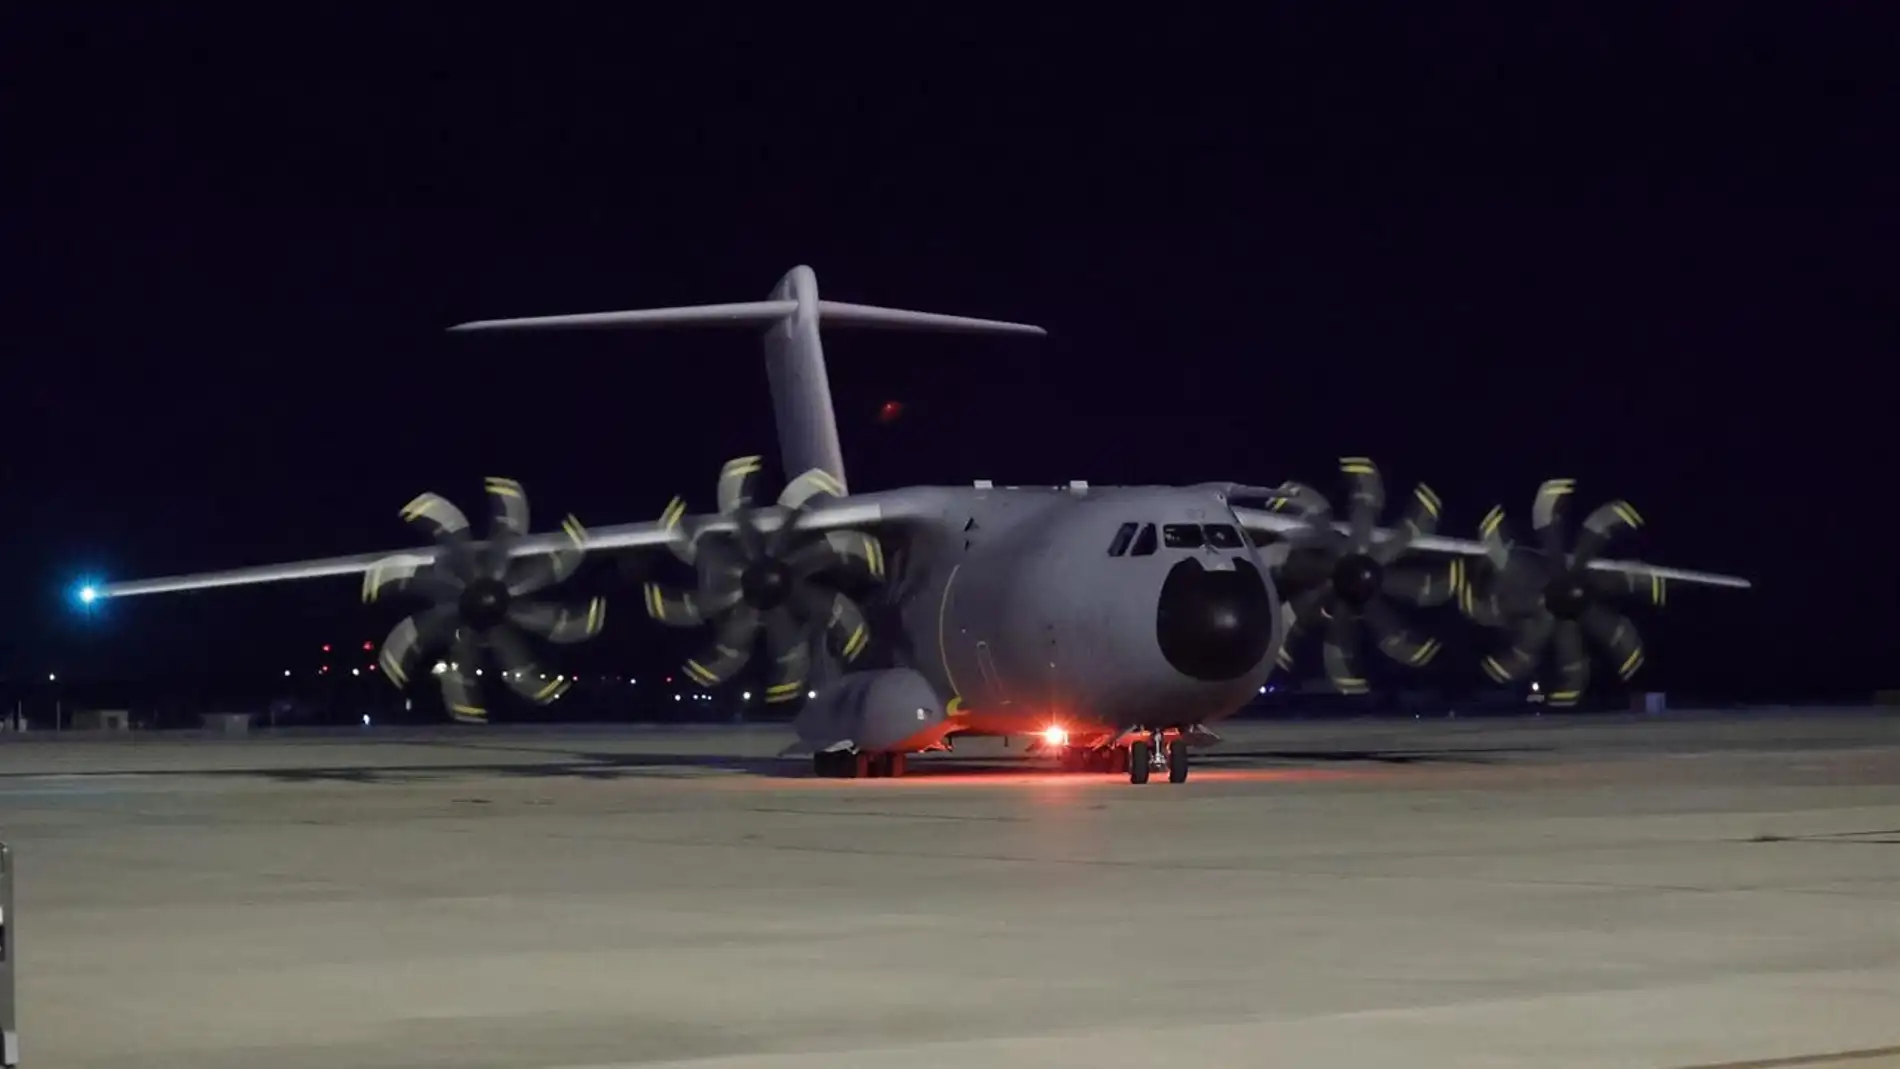 El segundo avión español aterriza en Madrid con 110 repatriados afganos evacuados